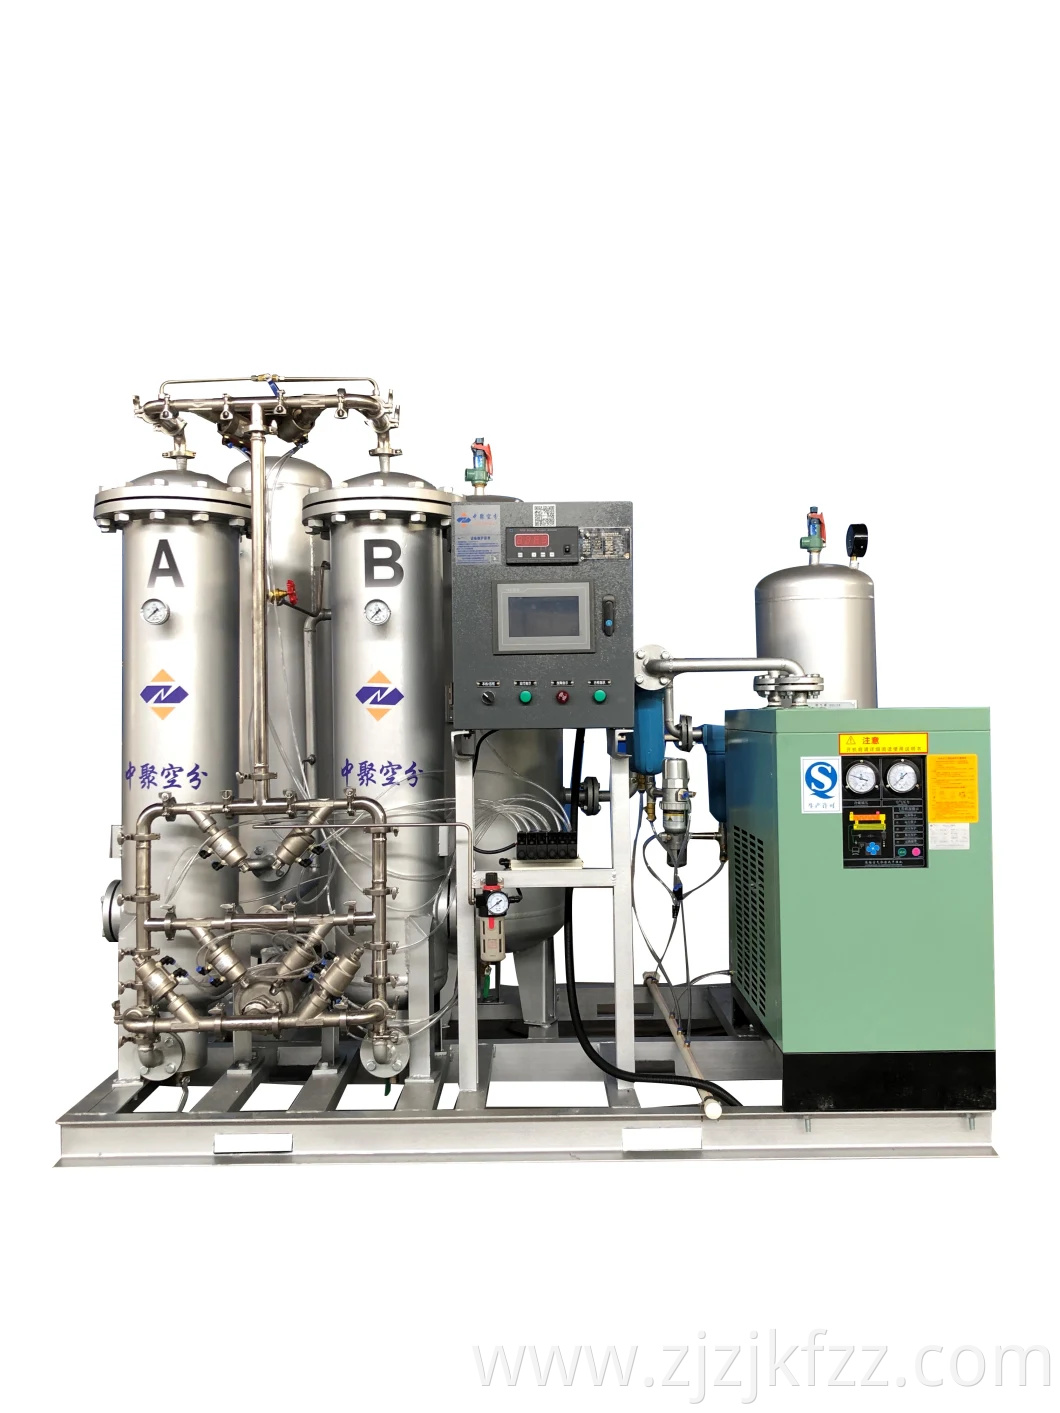 Máquina generadora de oxígeno por adsorción por oscilación de presión Psa, generador de oxígeno para la venta médica